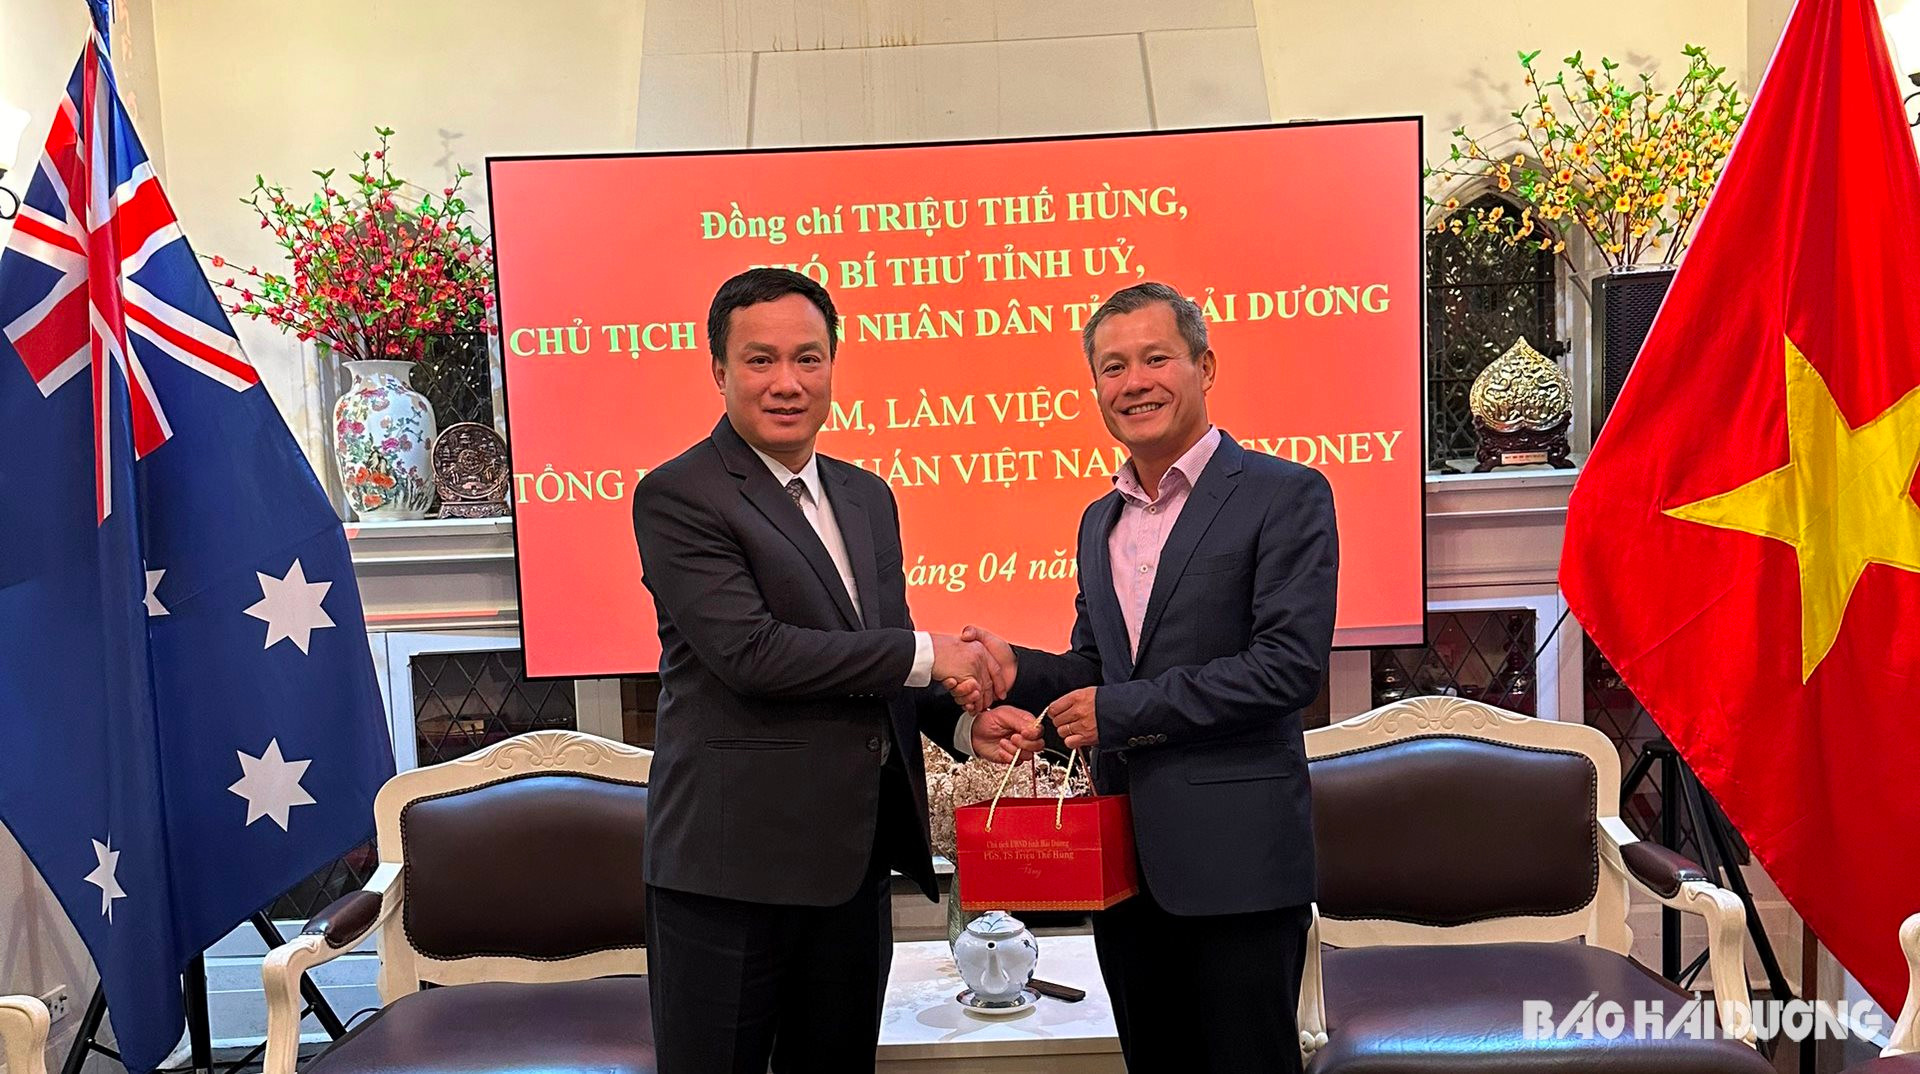 Đồng chí Triệu Thế Hùng, Phó Bí thư Tỉnh ủy, Chủ tịch UBND tỉnh Hải Dương tặng quà lưu niệm cho Tổng lãnh sự Việt Nam tại Sydney Nguyễn Đăng Thắng